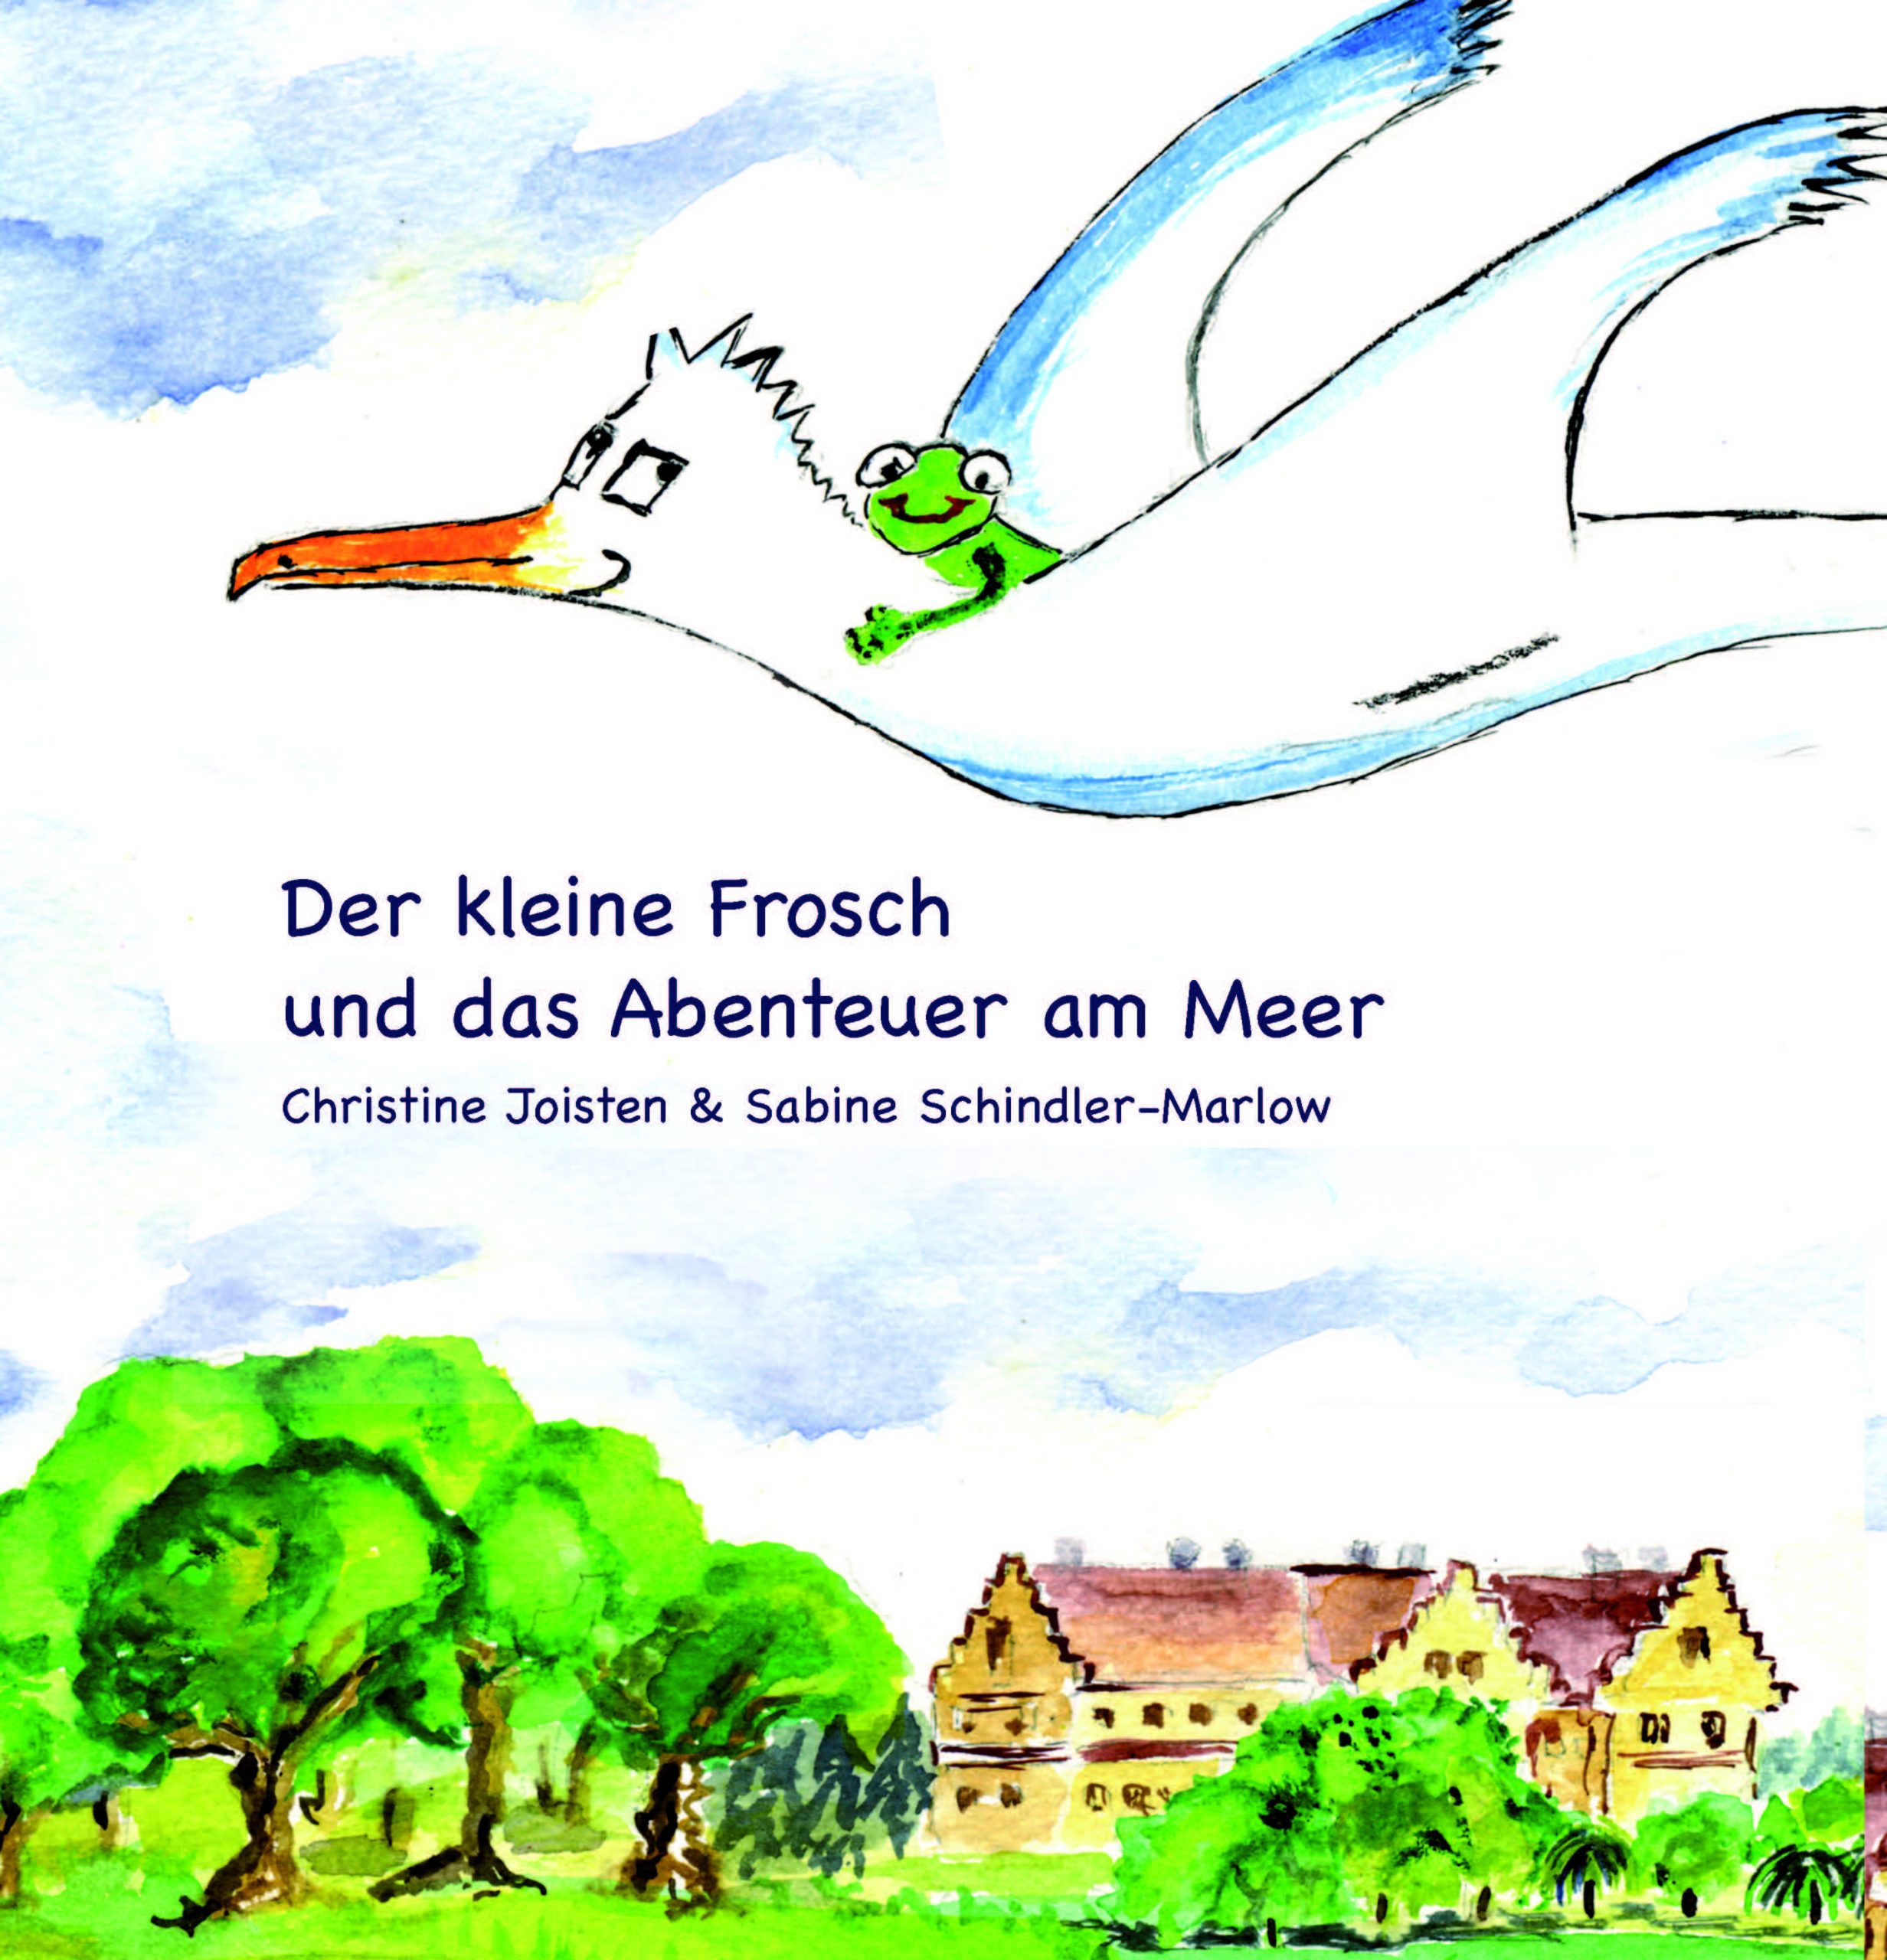 Auf dem Cover des Kinderbuchs "Der kleine Frosch und das Abenteuer am Meer" ist ein Frosch, der auf einem Albatross fliegt, abgebildet.